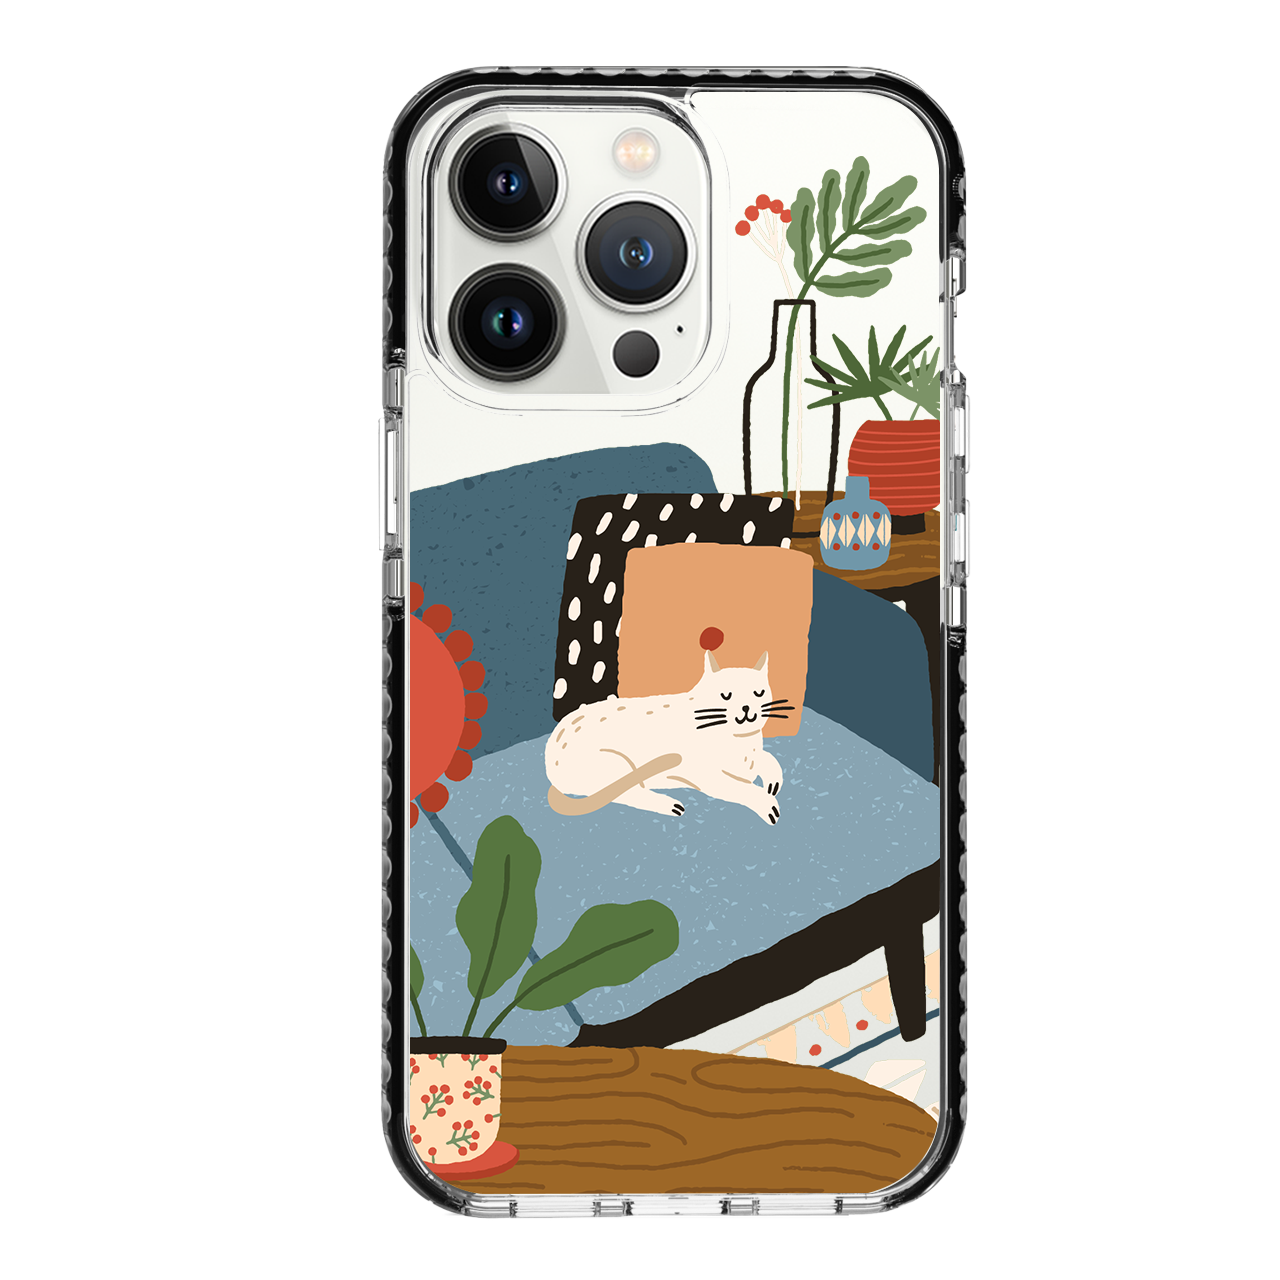 HI-SHIELD Stylish เคสใสกันกระแทก iPhone รุ่น Cat [เคส iPhone12][เคส iPhone13]